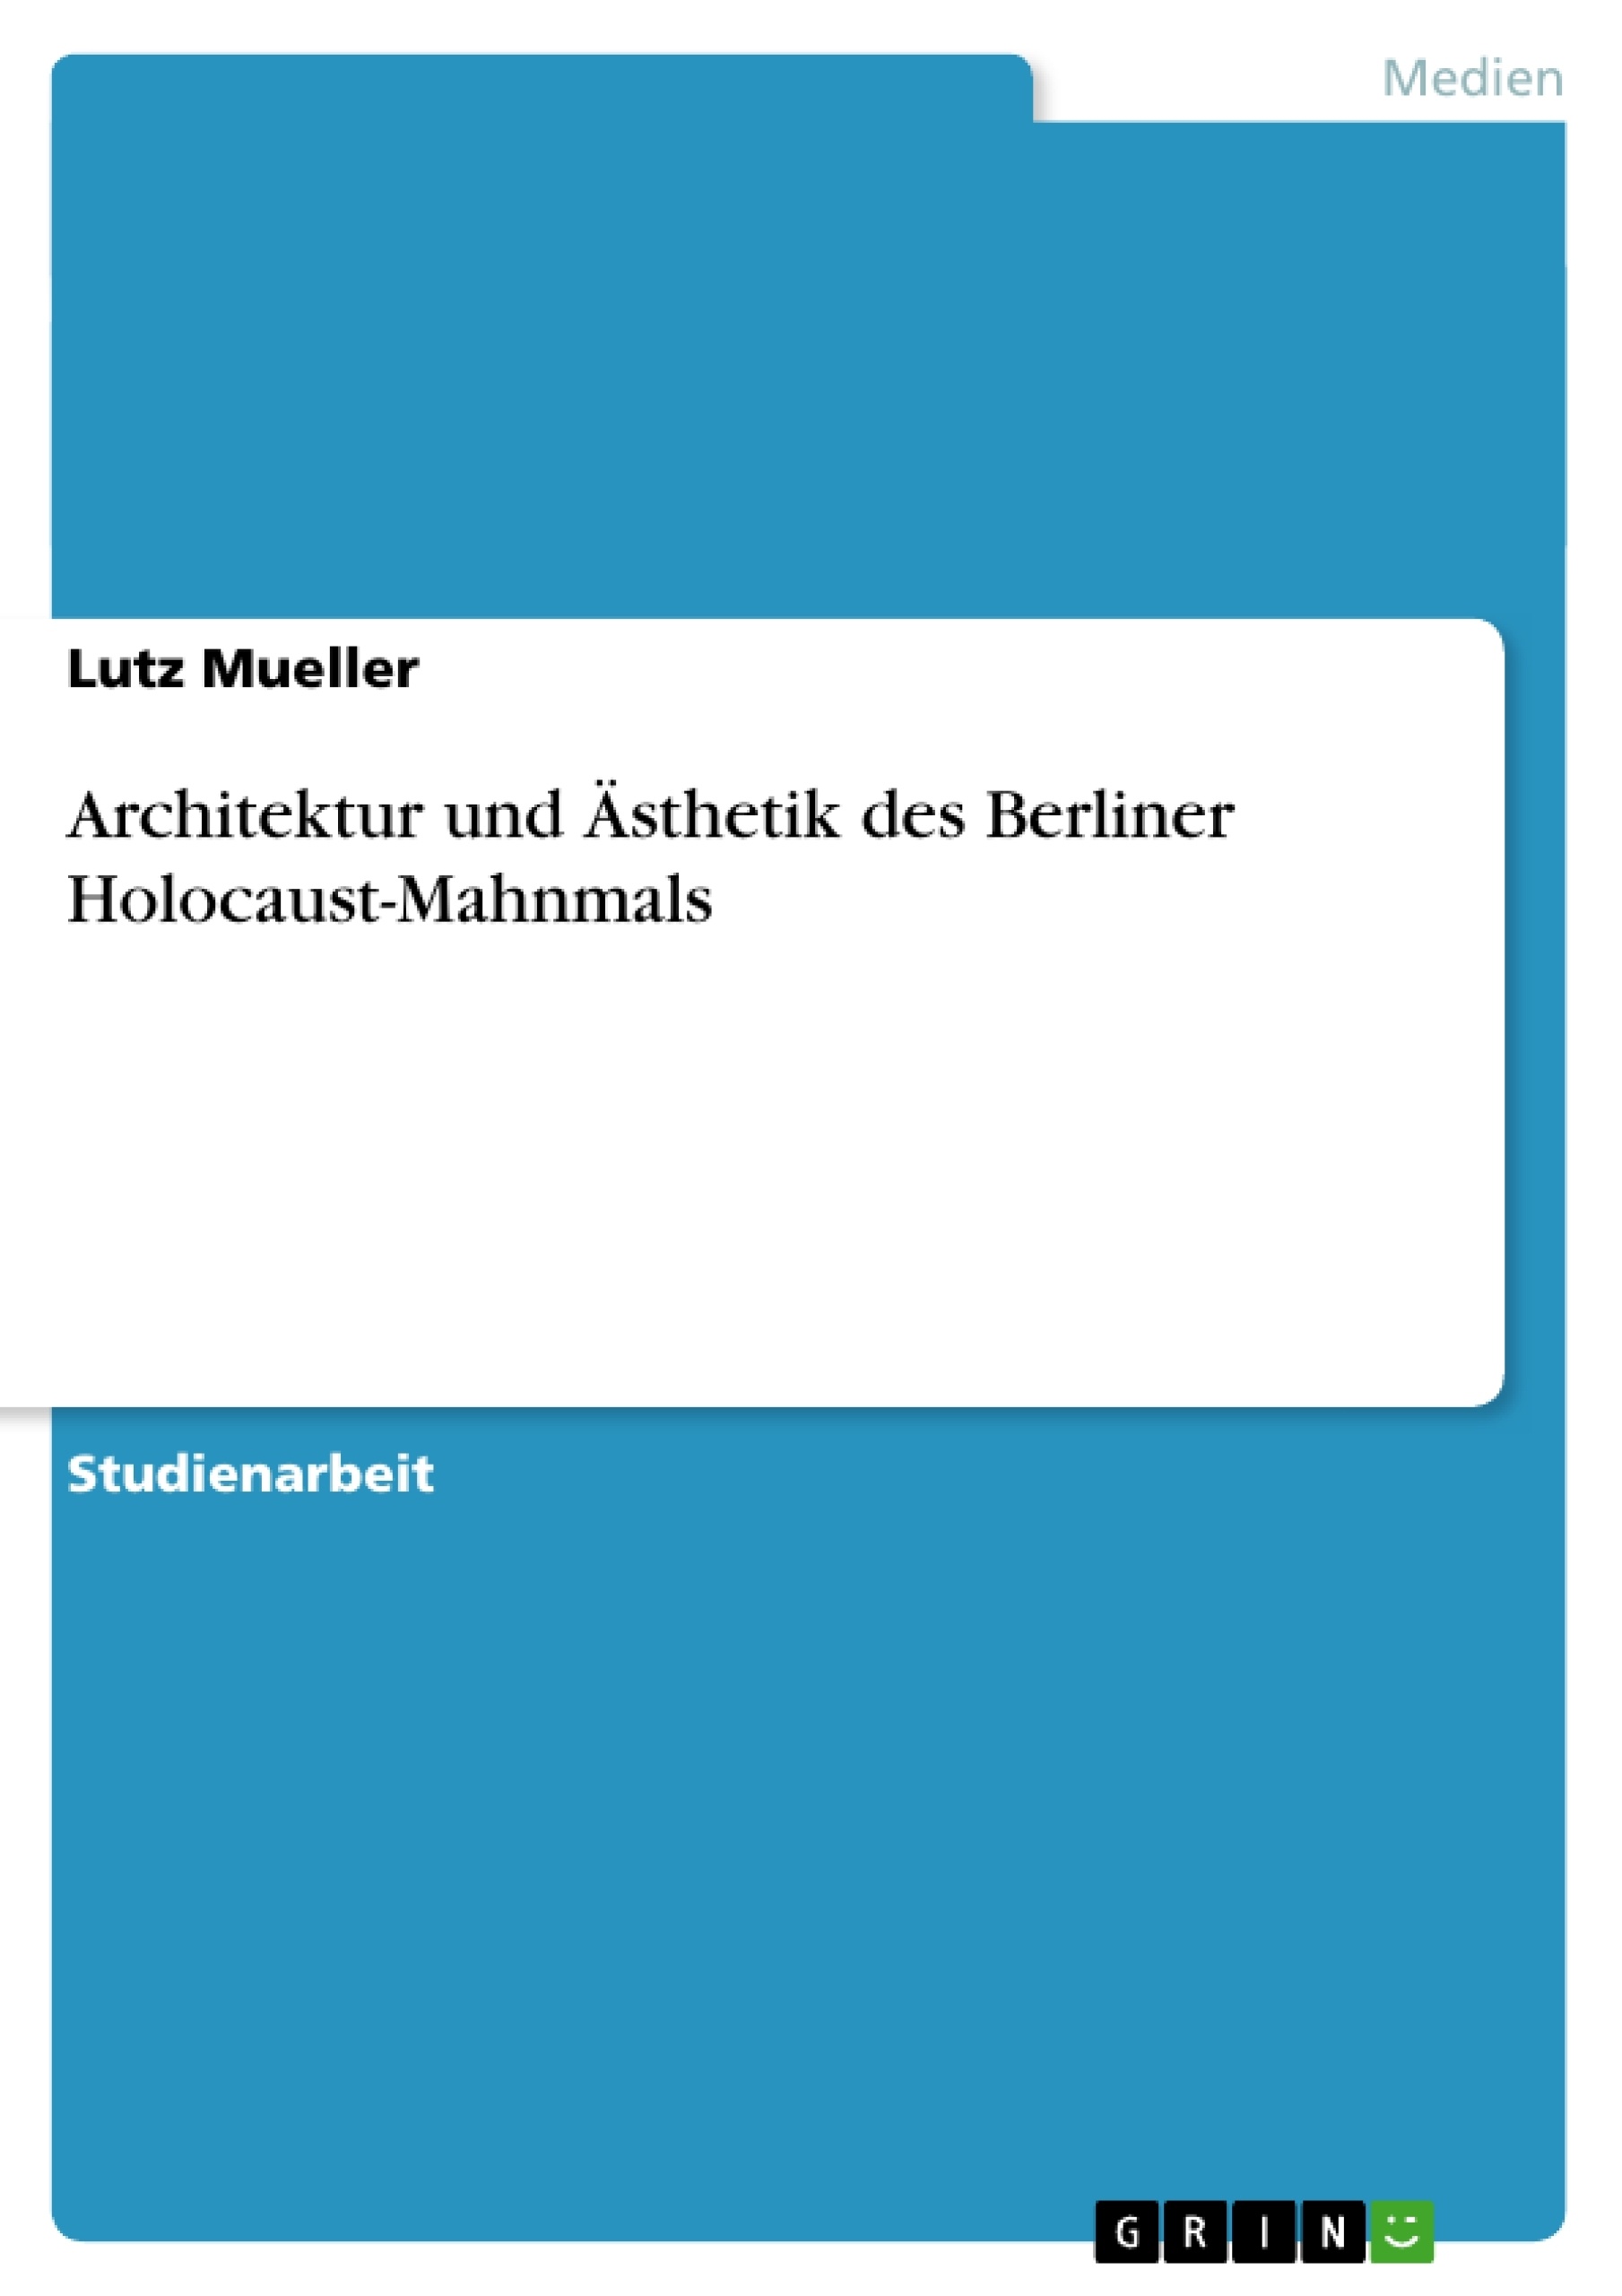 Título: Architektur und Ästhetik des Berliner Holocaust-Mahnmals